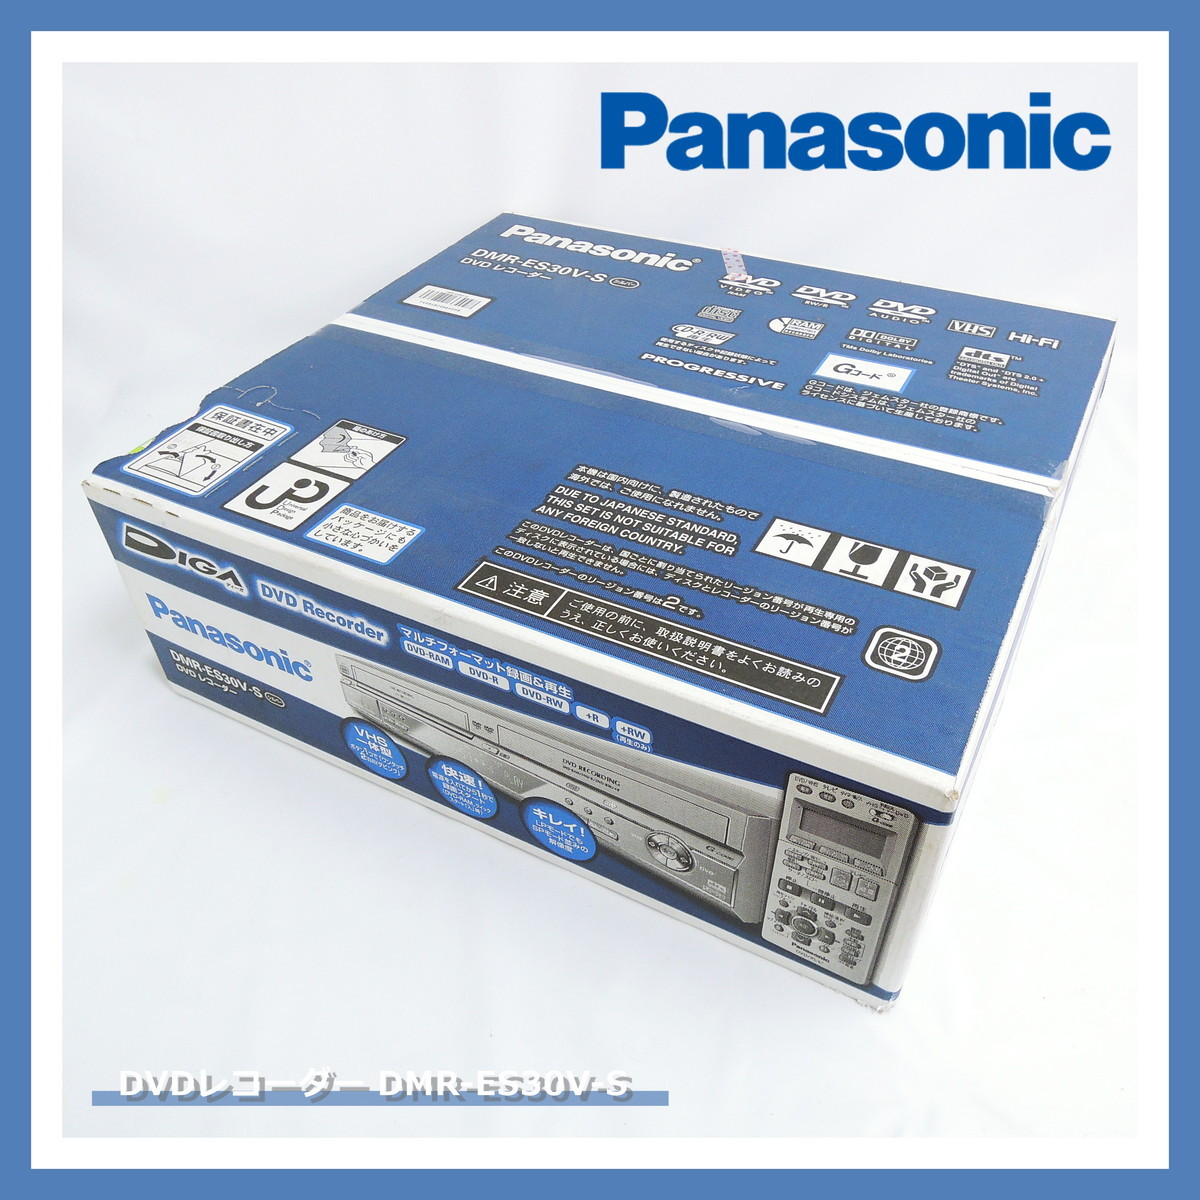 【即決!早い者勝ち!】 パナソニック DMR-ES30V -S シルバー DVDレコーダー VHSビデオ一体型 新品 未開封 Panasonic DIGA ディーガ